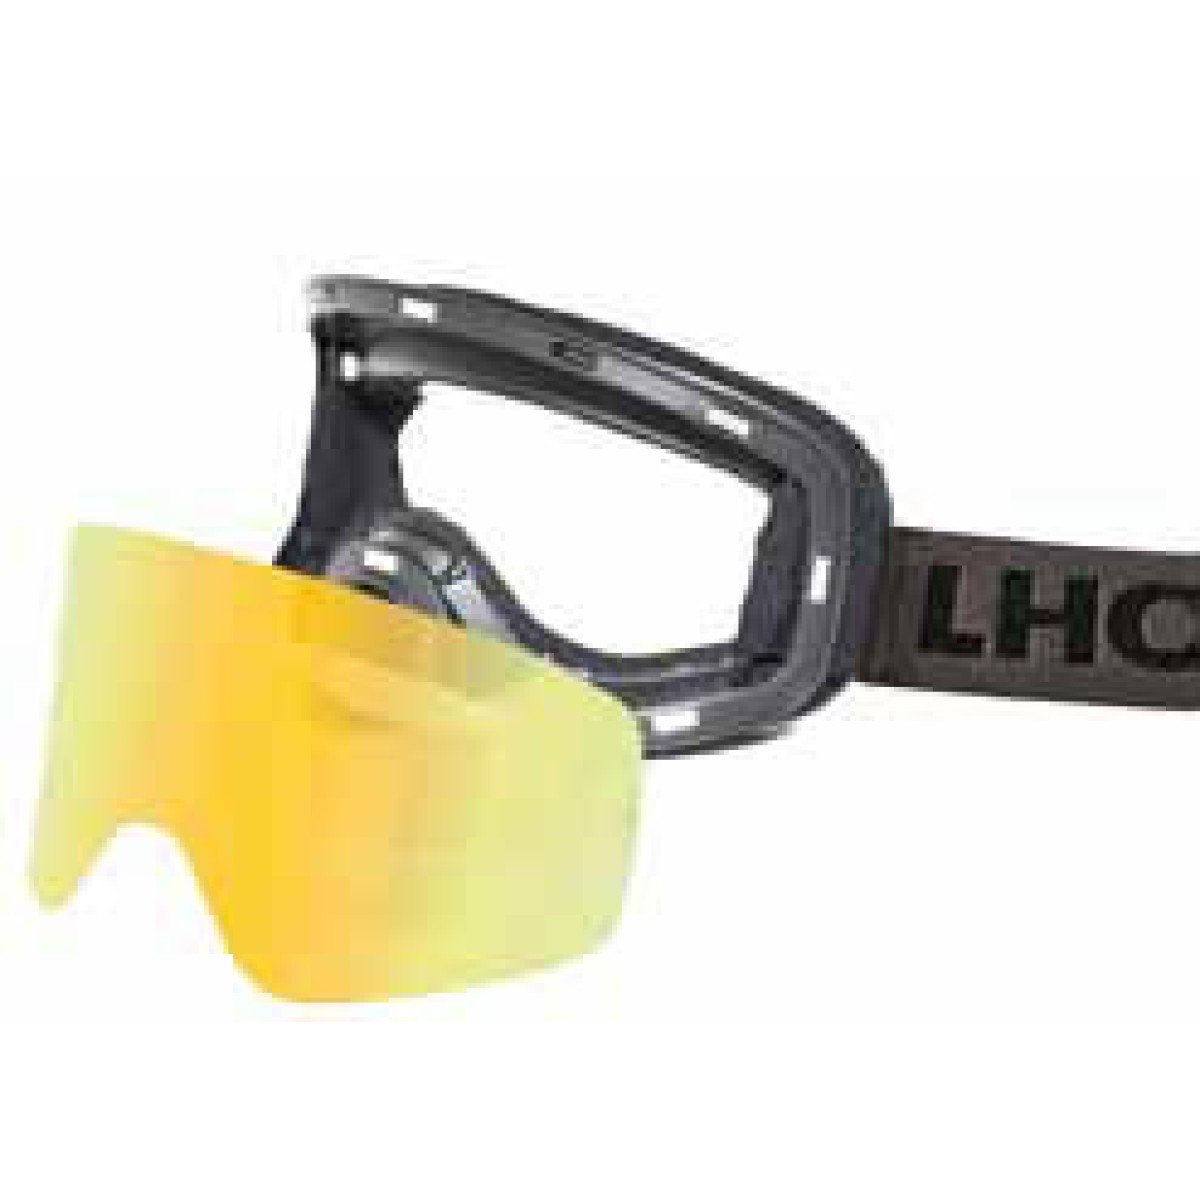 Ски очила Khene ORG magnetic+допълнителна плака LHOTSE - изглед 3